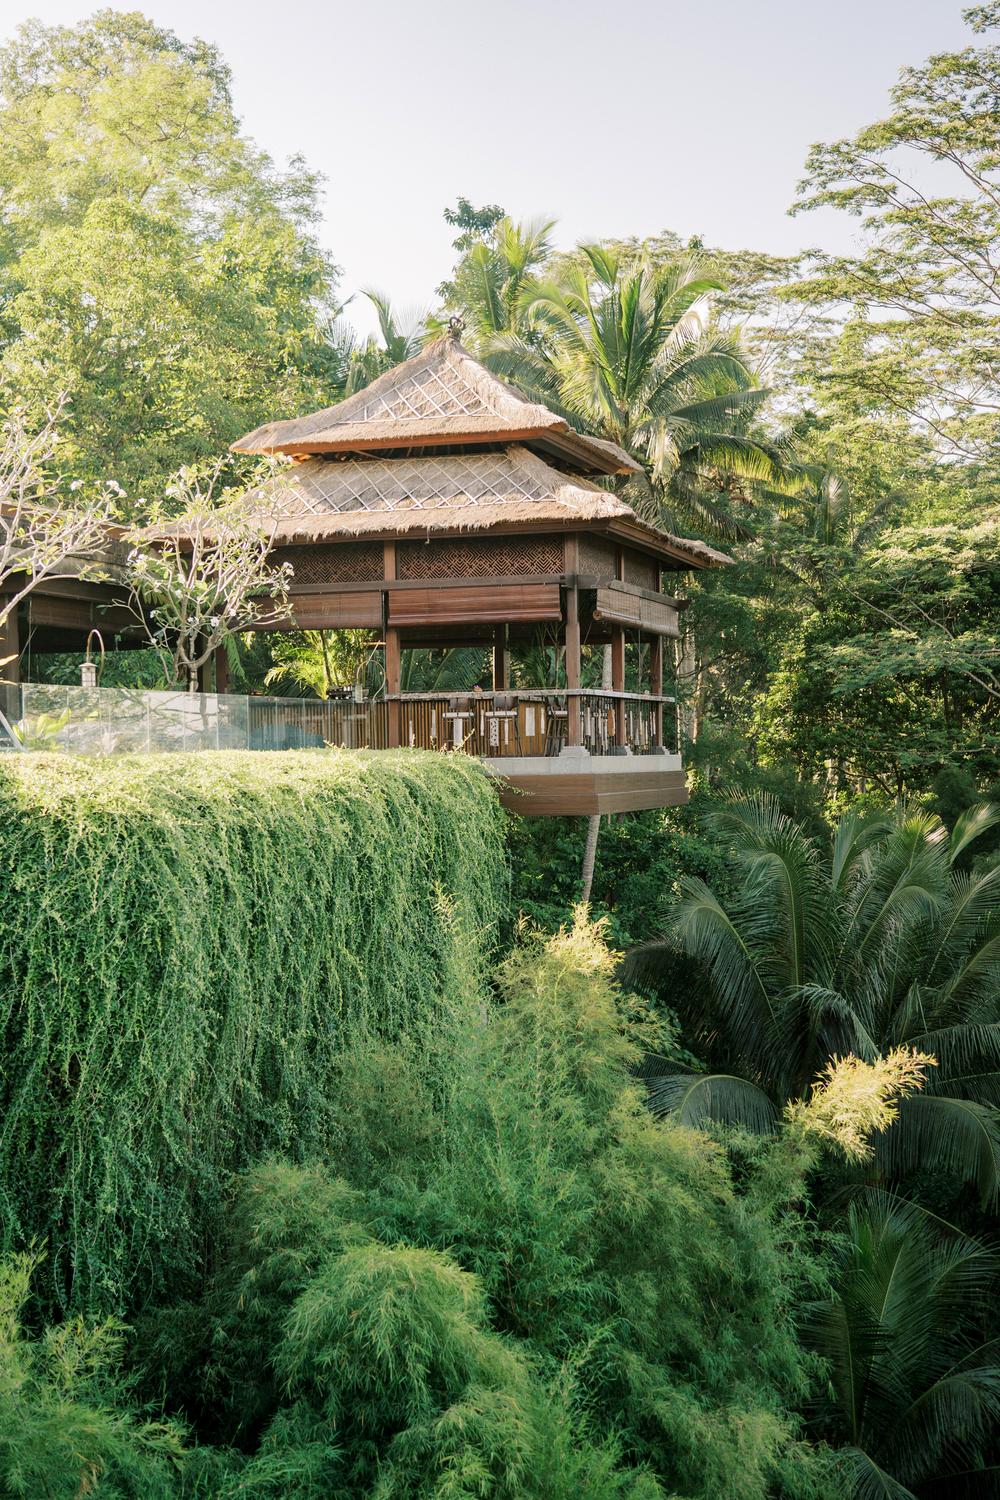 Vow renewal on Bali, Ubud